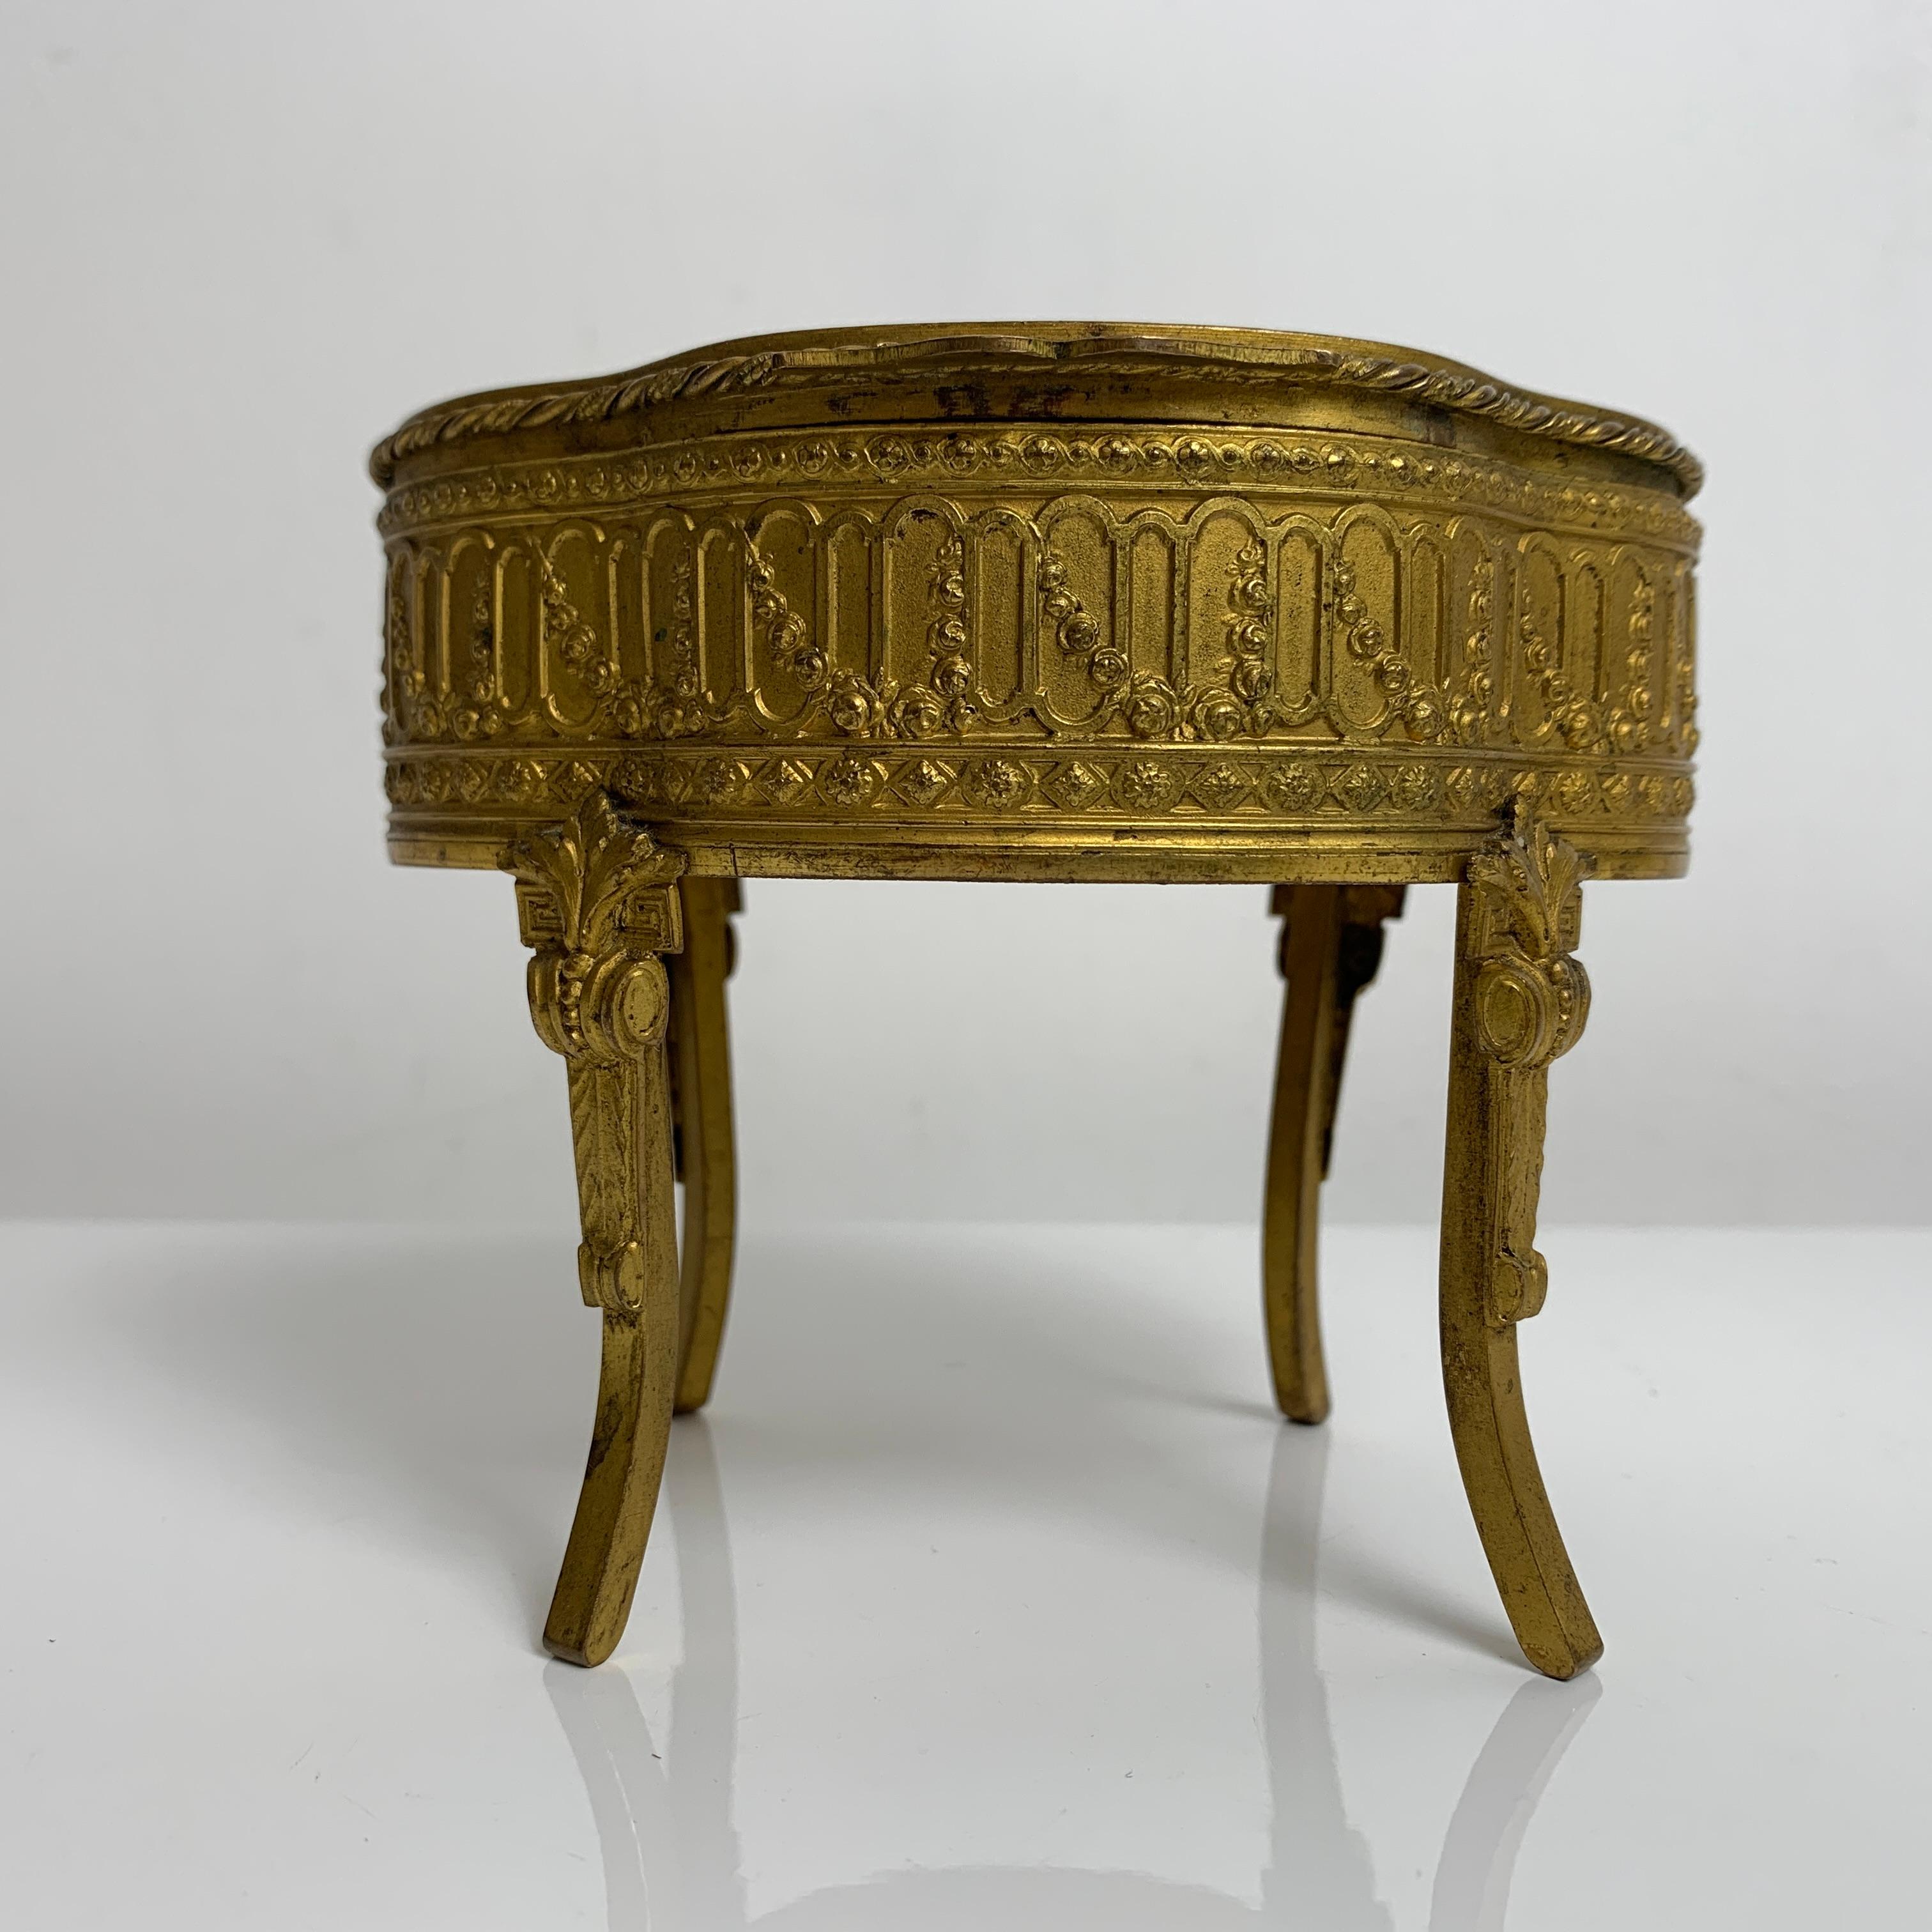 Très élégant coffret a bijoux ancien en forme de mobilier miniature reposant sur 4 pieds. 

Construction ancienne, fin 19e dans le style Louis XVI. Sujet en bronze doré, rehaussé d'un portrait de femme en médaillon. L'intérieur du coffret de forme